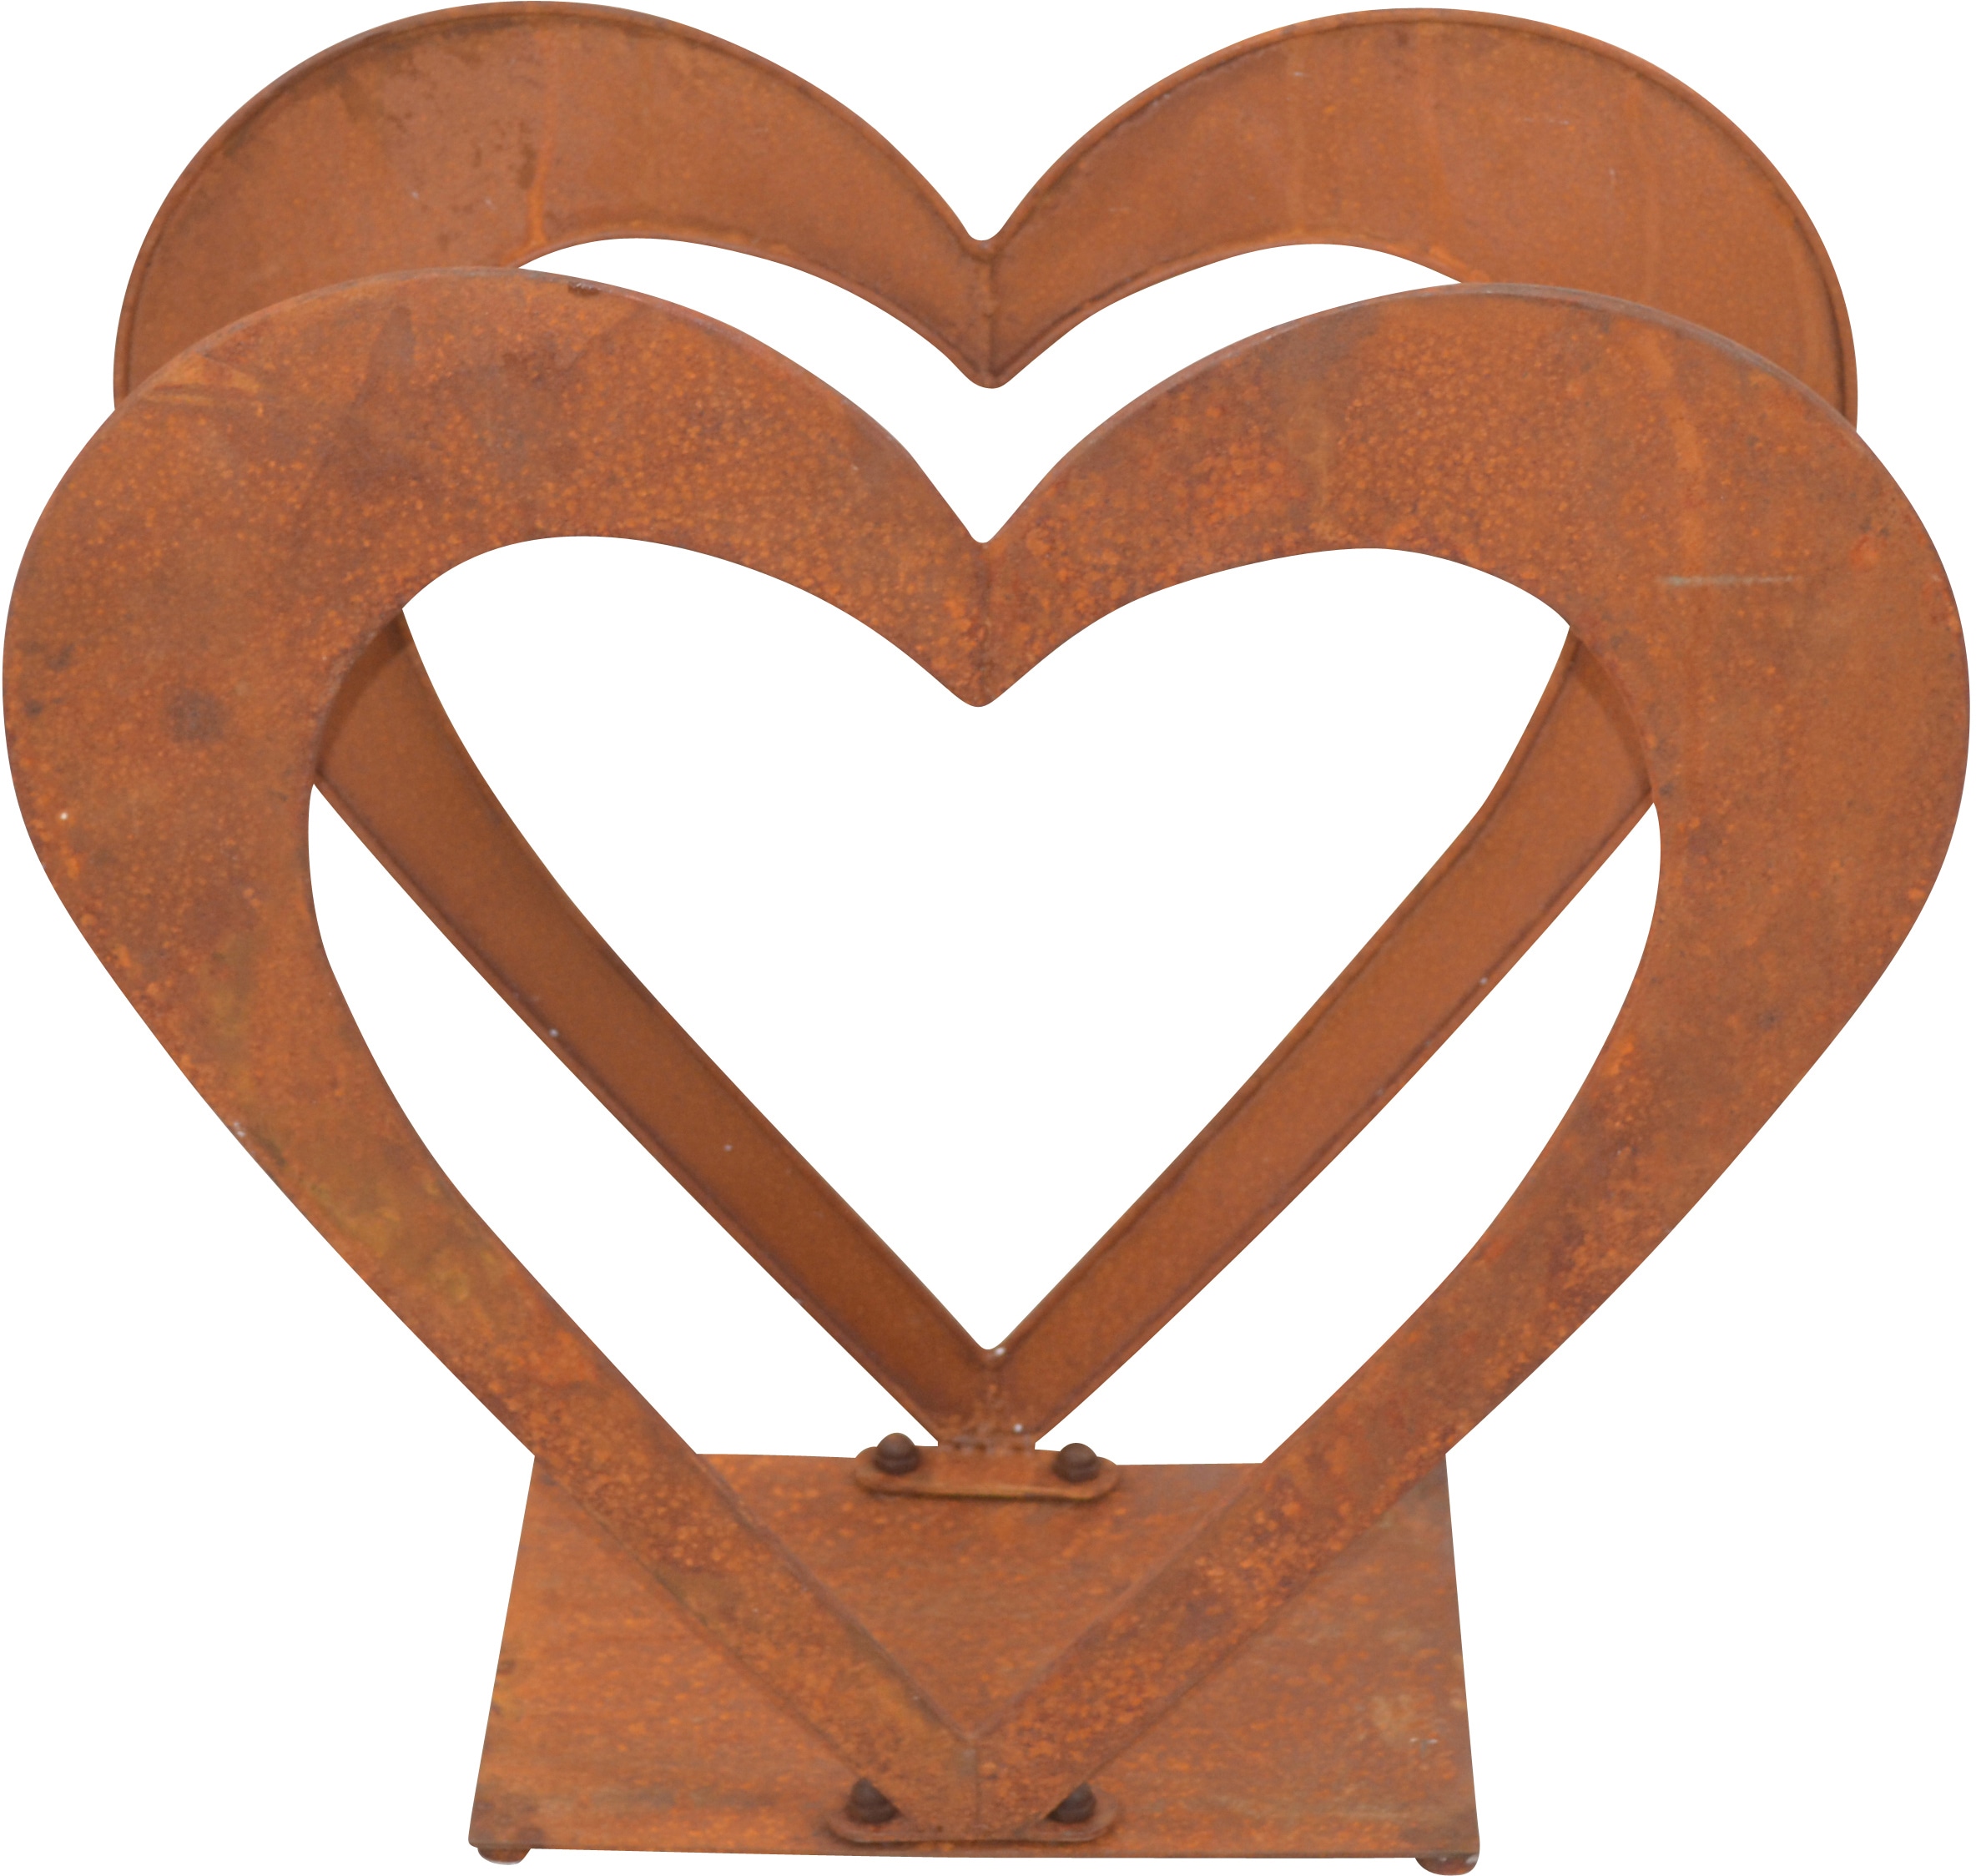 HOFMANN LIVING AND MORE Regal »Herzilein, Weihnachtsdeko aussen«, für Holz, aus Eisen mit rostiger Oberfläche